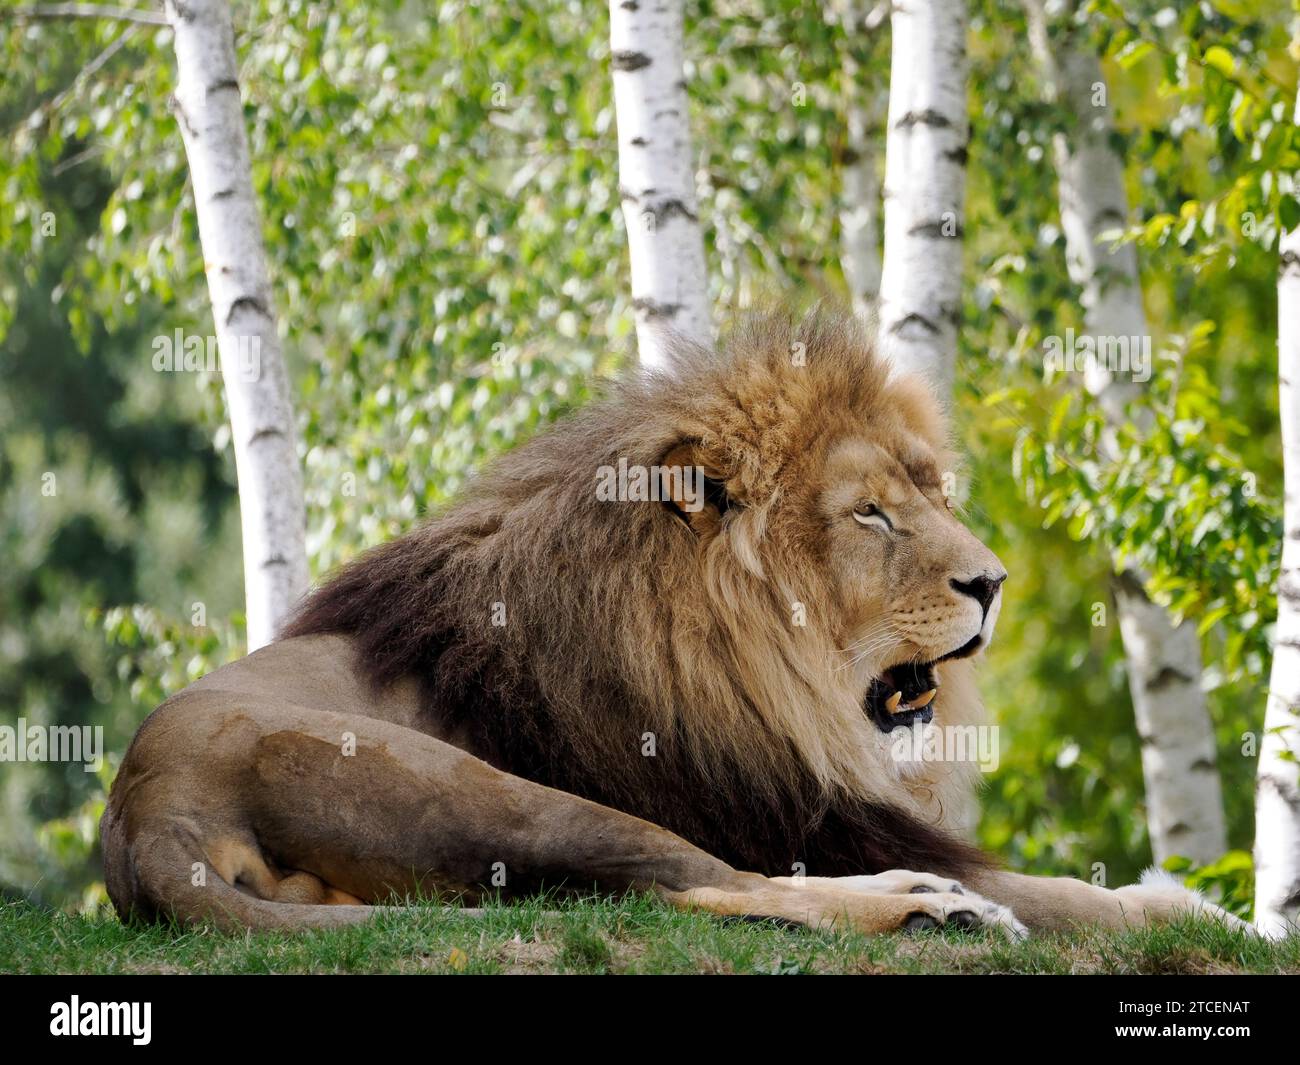 Portrait de Lion (Panthera leo) allongé sur l'herbe et vu de Profil avec la bouche ouverte sur Fond de troncs d'arbres Stockfoto